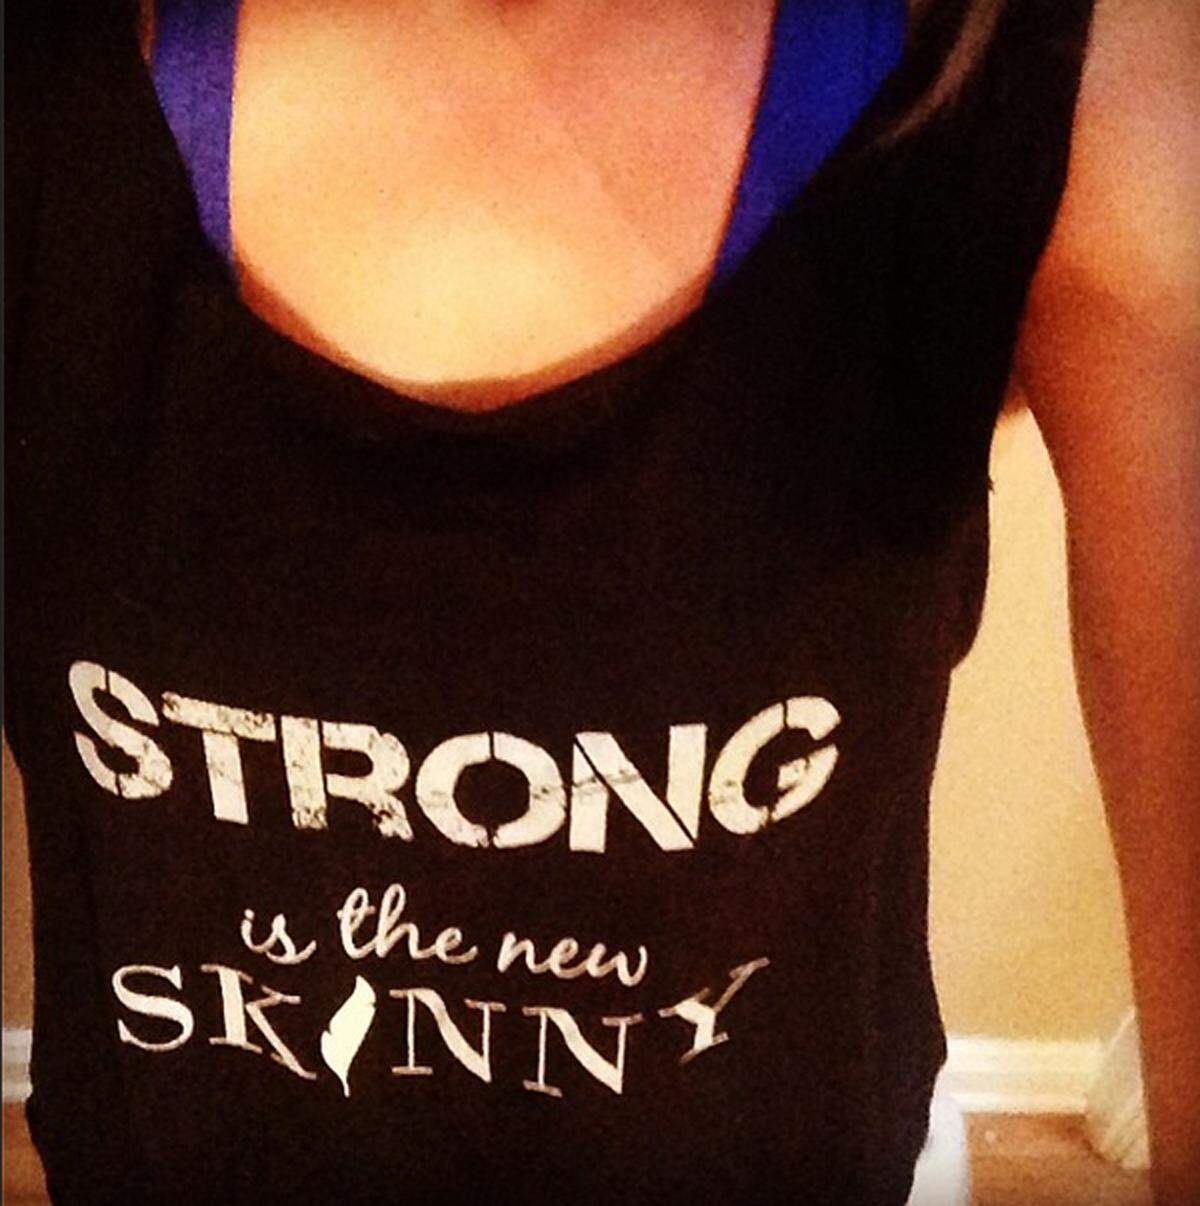 Motivieren kann man sich auch mit dem richtigen Outfit. "Strong is the new skinny" (zu dts.: Stark sein ist das neue dünn sein) trägt Schauspielerin Ashley Greene als Mantra auf ihrem T-Shirt.